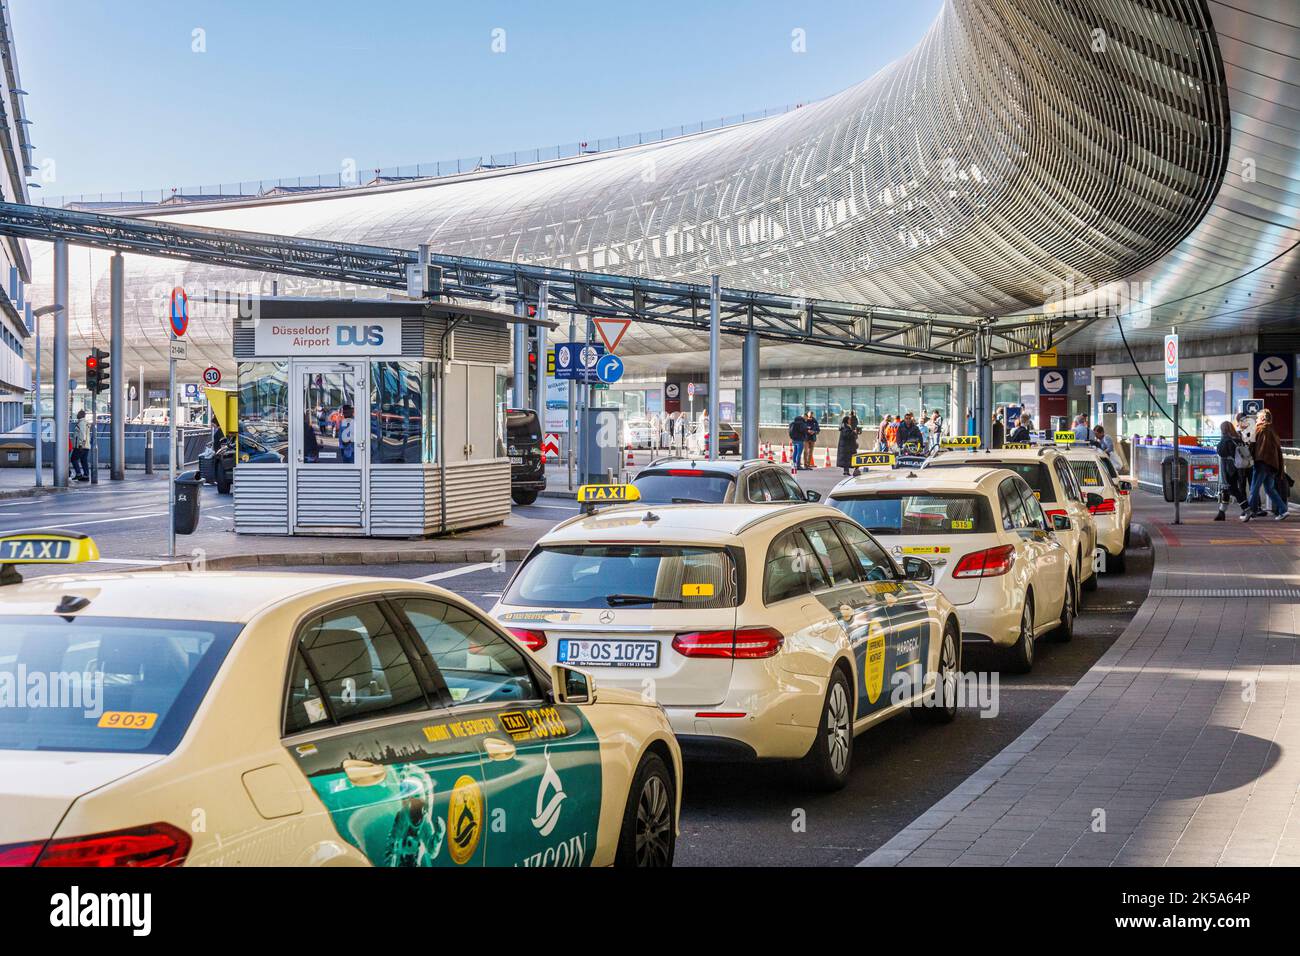 Flughafen Düsseldorf - Taxistand am Flughafenterminal Stockfoto